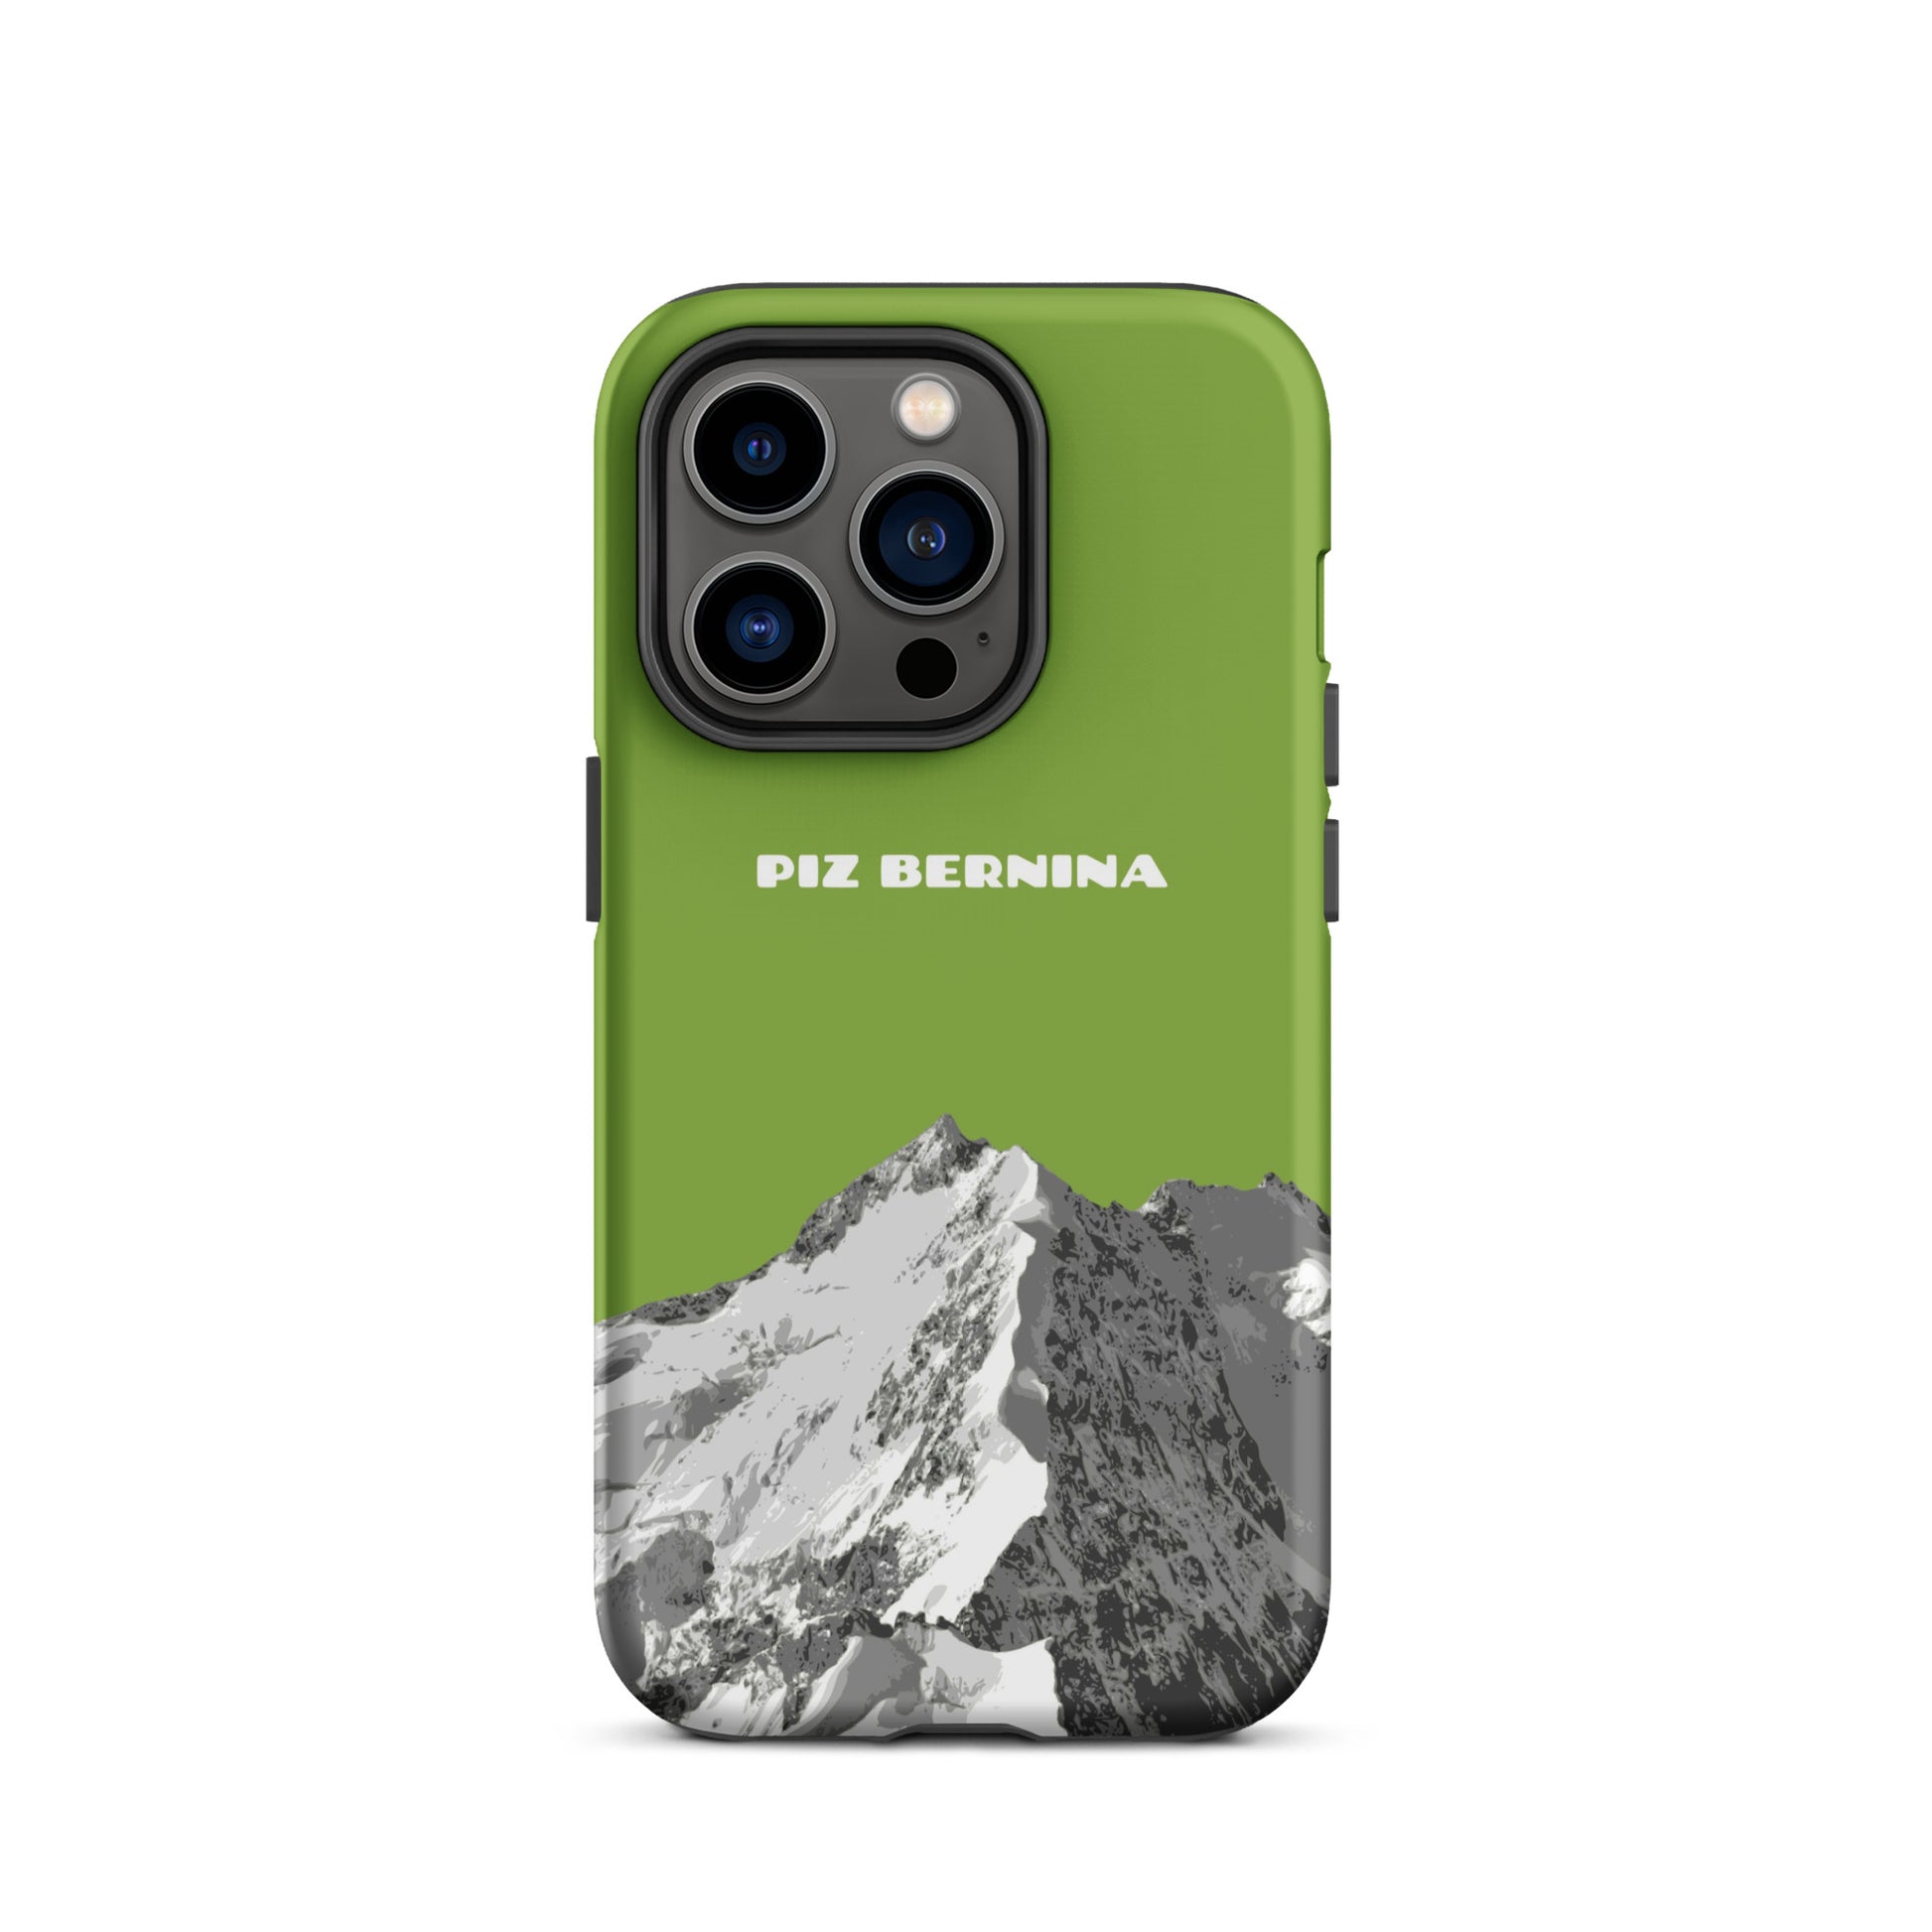 Hülle für das iPhone 14 Pro von Apple in der Farbe Gelbgrün, dass den Piz Bernina in Graubünden zeigt.